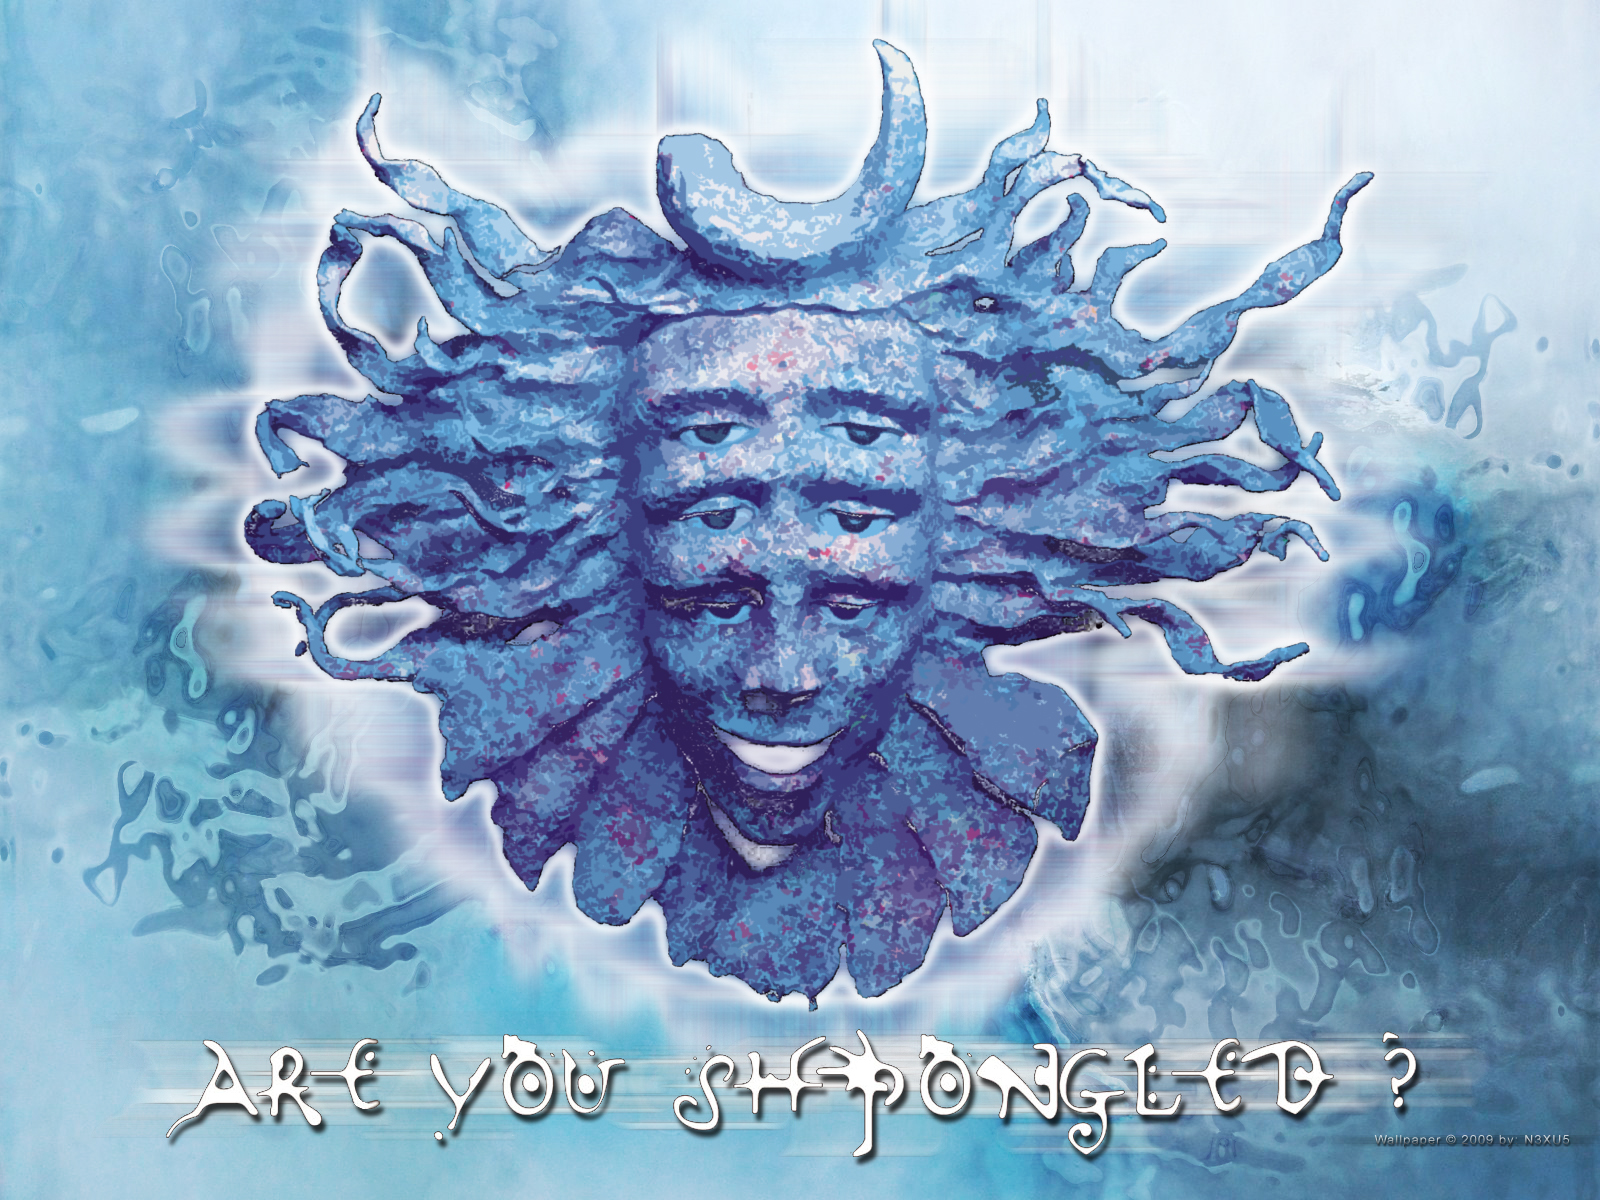 Artistic Shpongle Mask HD Wallpaper | Background Image